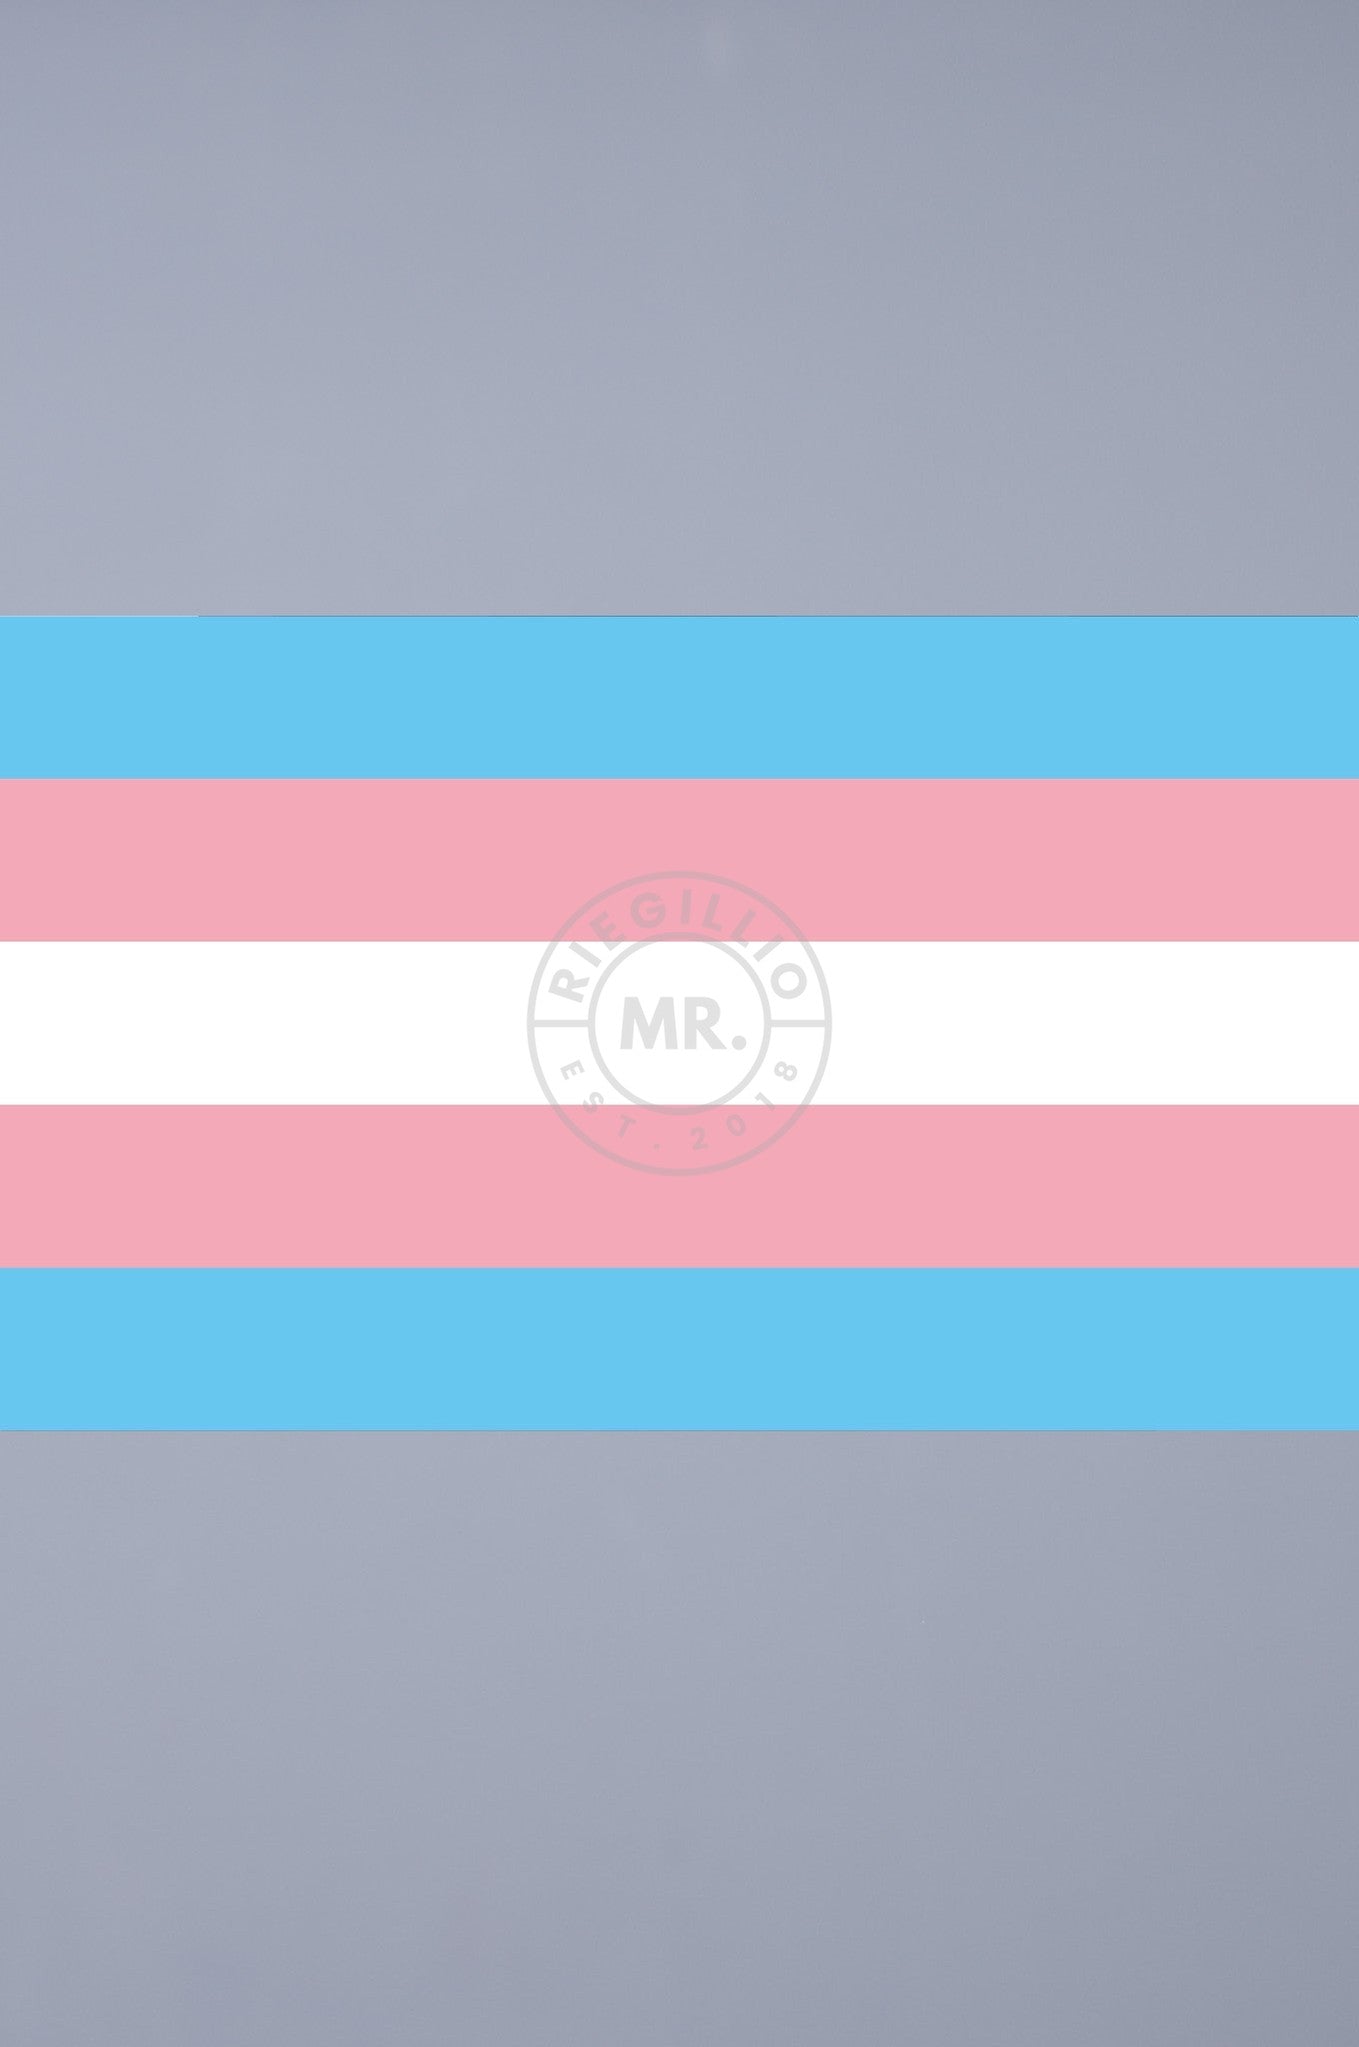 Pride Flag - Transgender - 90 x 150 cm at MR. Riegillio